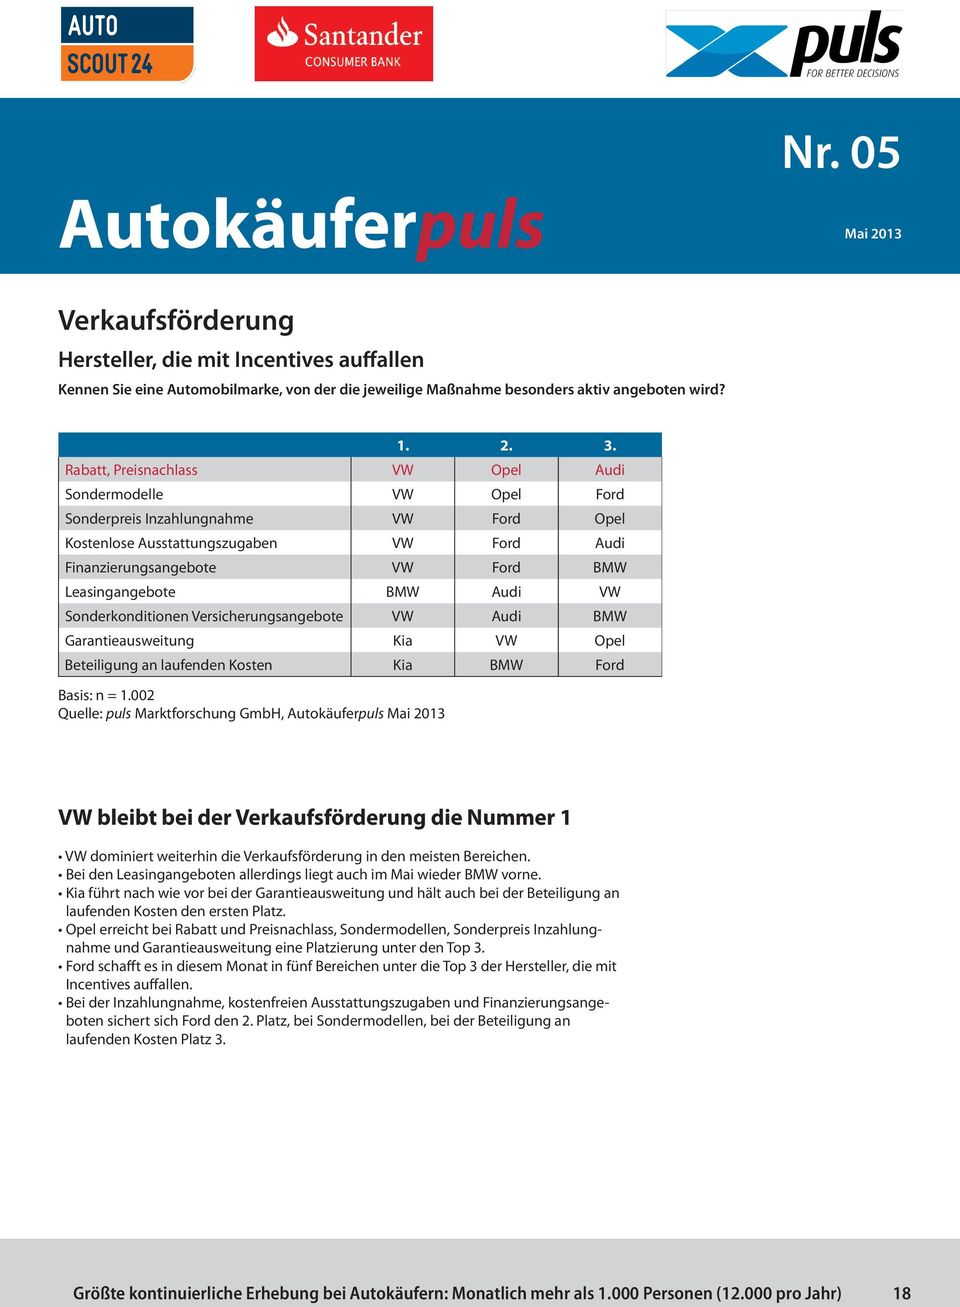 Audi VW Sonderkonditionen Versicherungsangebote VW Audi BMW Garantieausweitung Kia VW Opel Beteiligung an laufenden Kosten Kia BMW Ford Basis: n = 1.